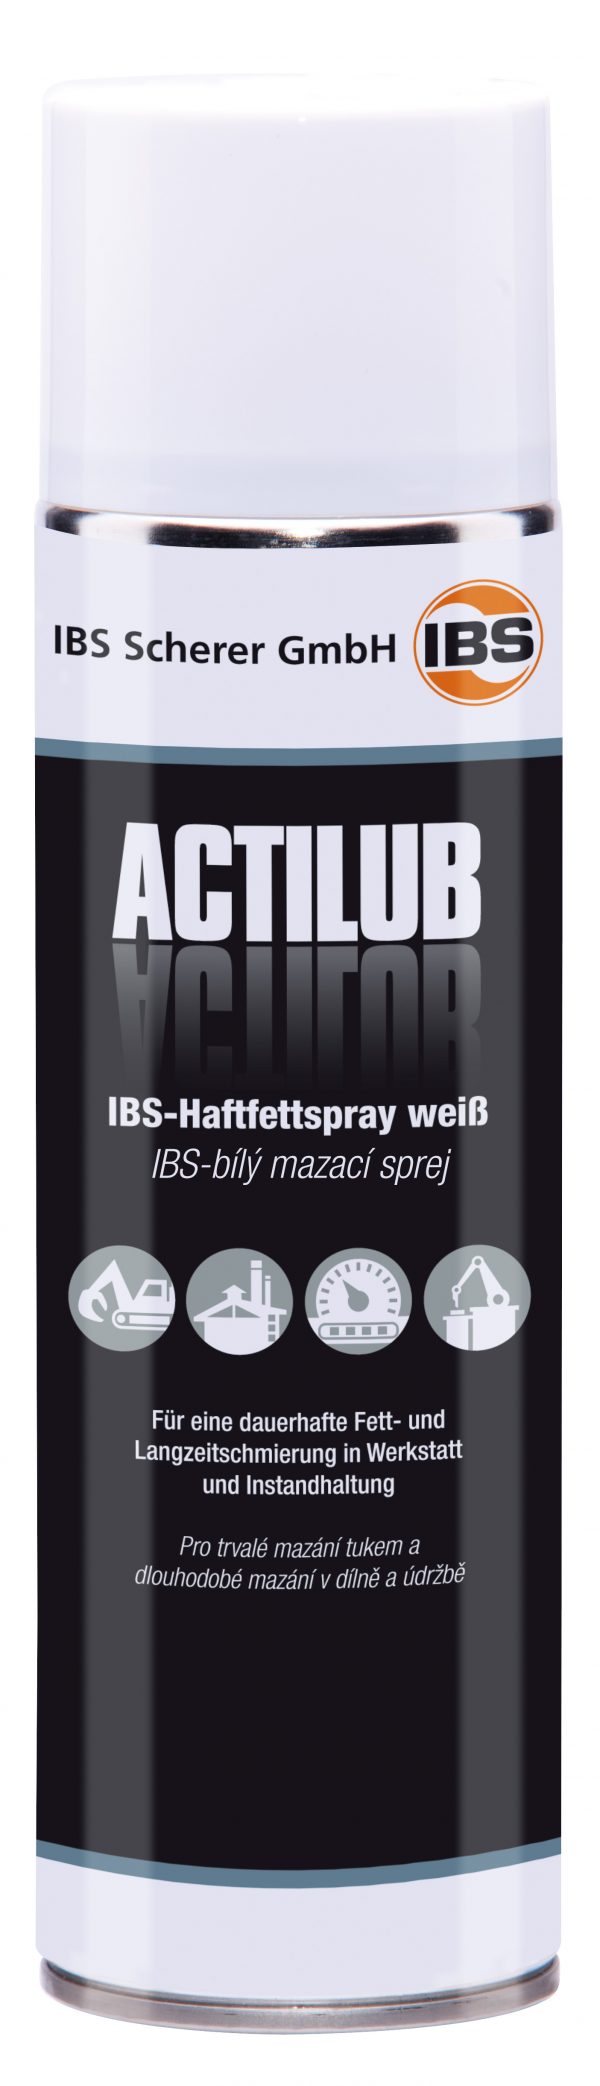 IBS-Spray do znakowania biały ActiLub